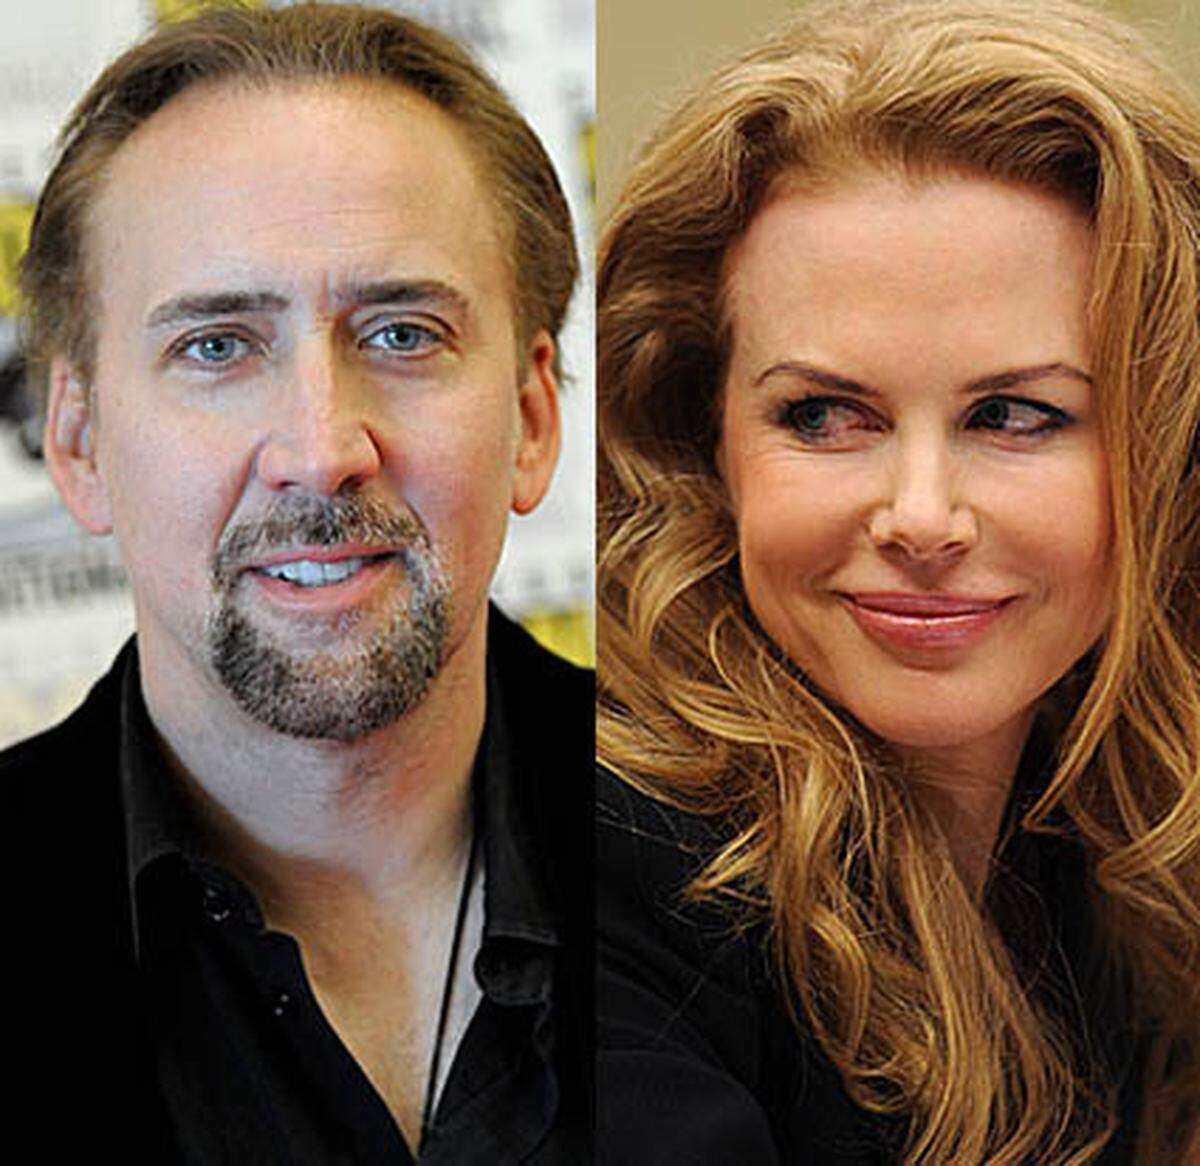 Nicolas Cage und Nicole Kidman werden vor der Kamera zum Ehepaar. Regisseur Joel Schumacher will noch in dieser Woche mit den Dreharbeiten zu dem Thriller "Trespass" beginnen.  Darin spielen sie ein Ehepaar, das von vier brutalen Verbrechern entführt wurde, die ein hohes Lösegeld verlangen. Neun Wochen lang will Schumacher im US-Staat Louisiana drehen.  Quelle: Variety